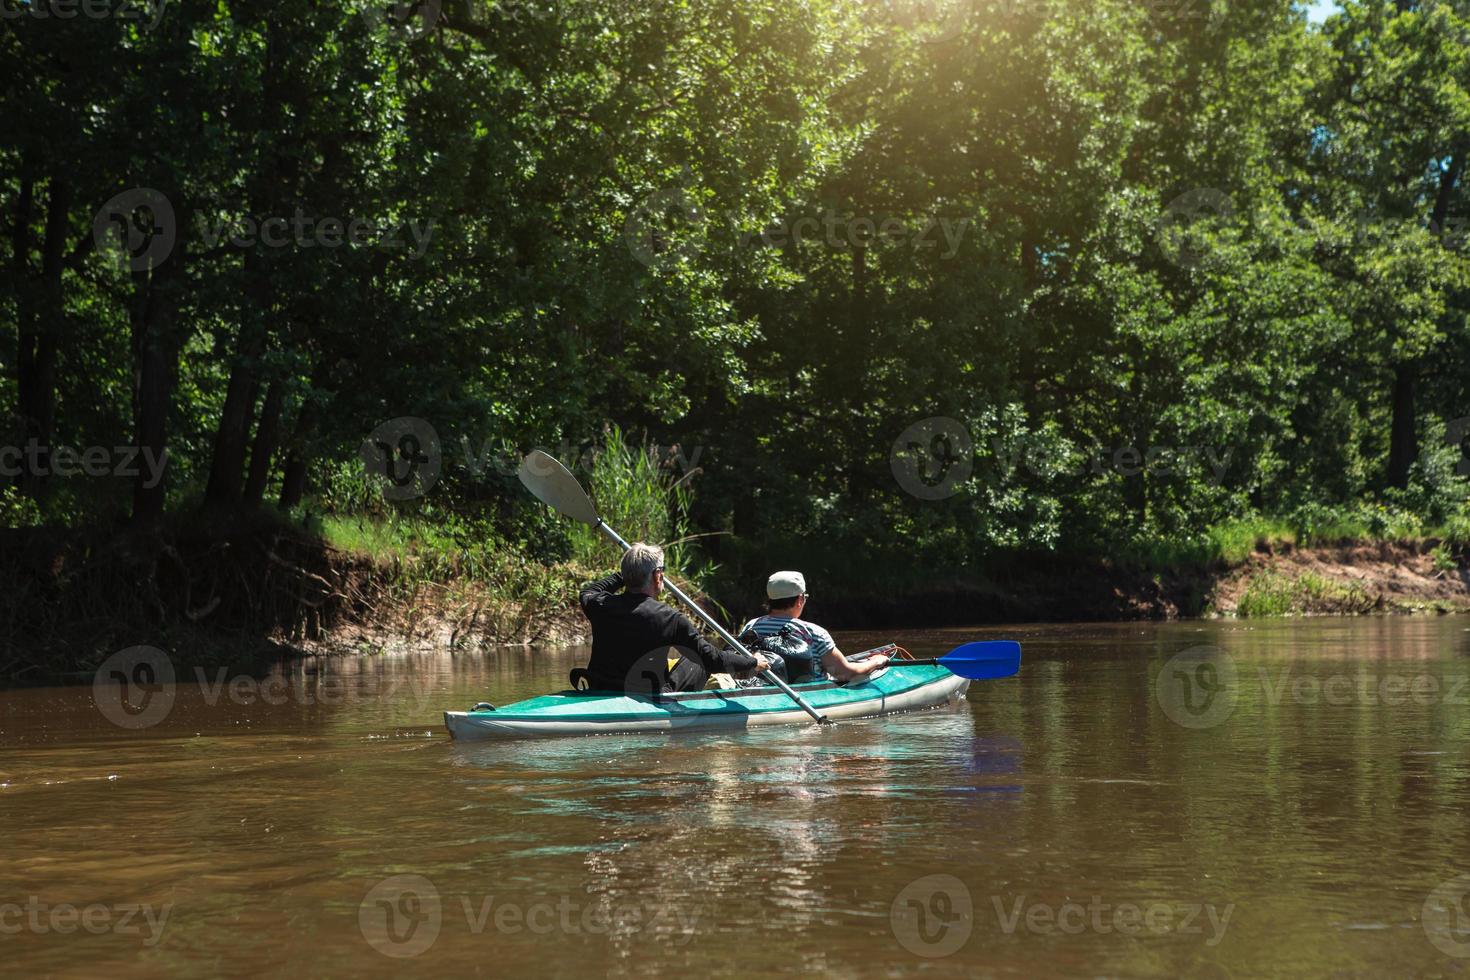 viaje familiar en kayak. una pareja de ancianos casados remando un bote en el río, una caminata acuática, una aventura de verano. deportes relacionados con la edad, salud y juventud mental, turismo, vejez activa foto